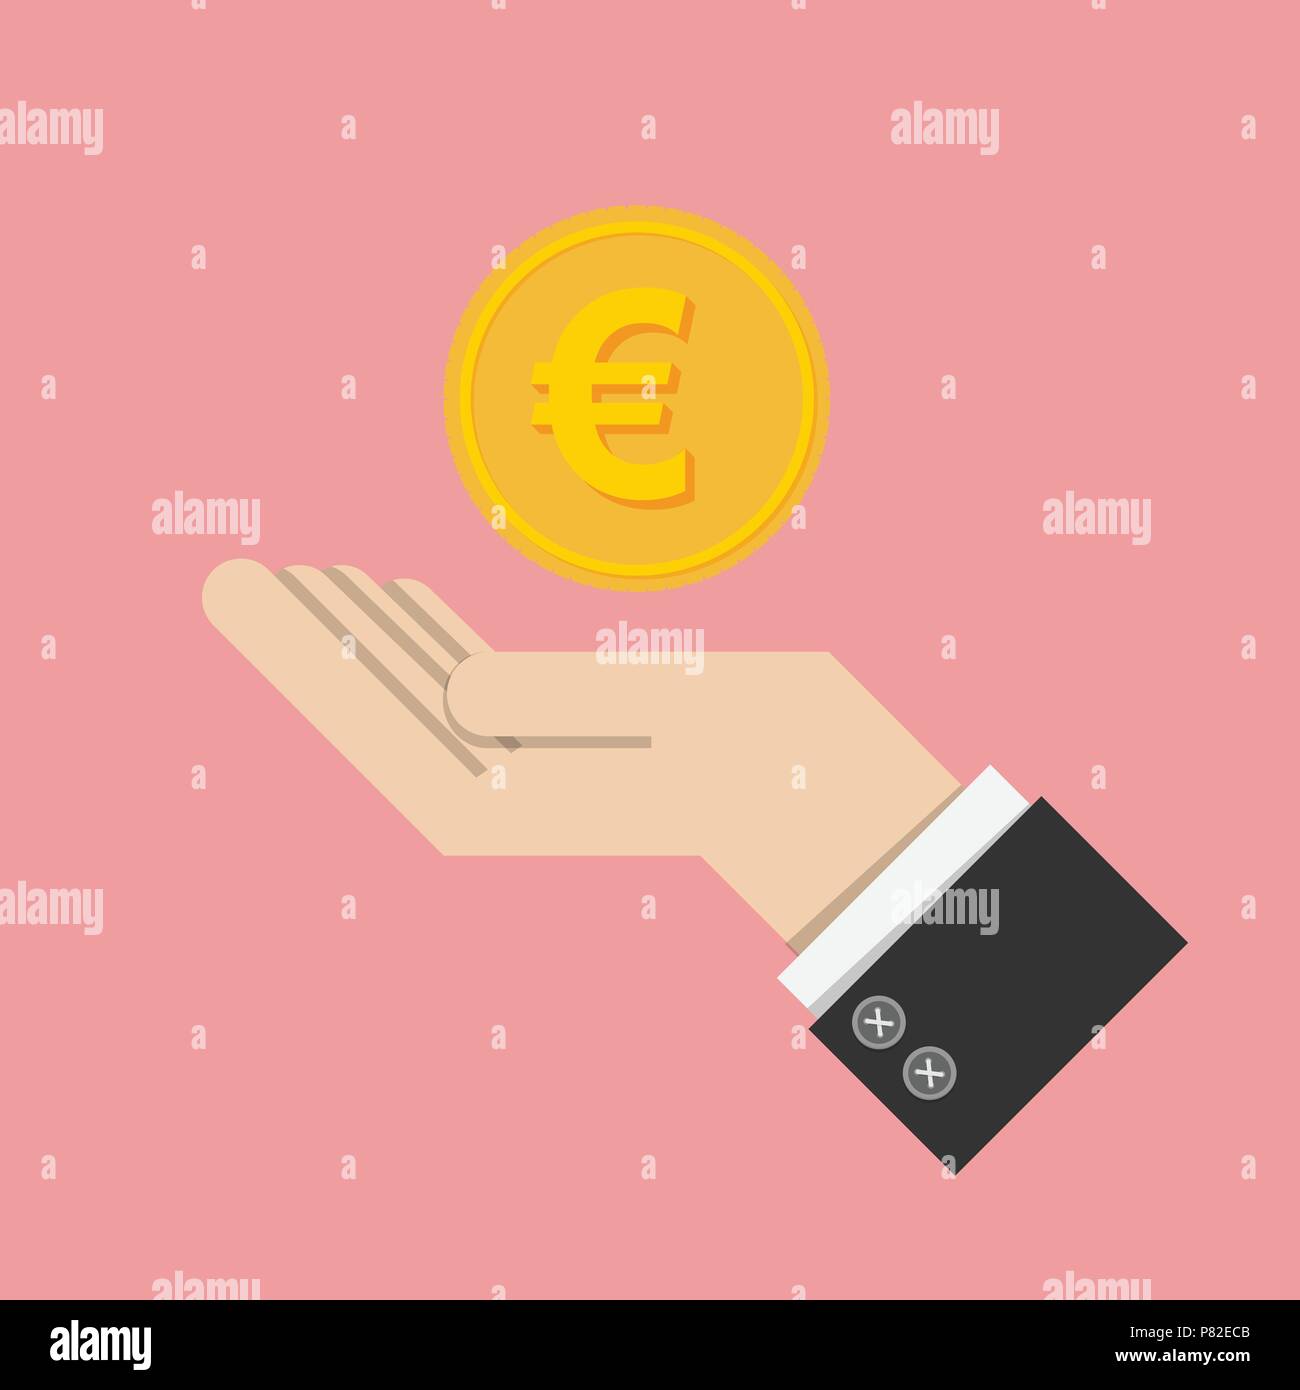 Vektor Illustrator. Rendite einer Investition Konzept. Goldmünze mit Zeichen der Euro Geld Währung auf Hand, Palm von Geschäftsmann. Wachstum investieren, Finanzen pl Stock Vektor